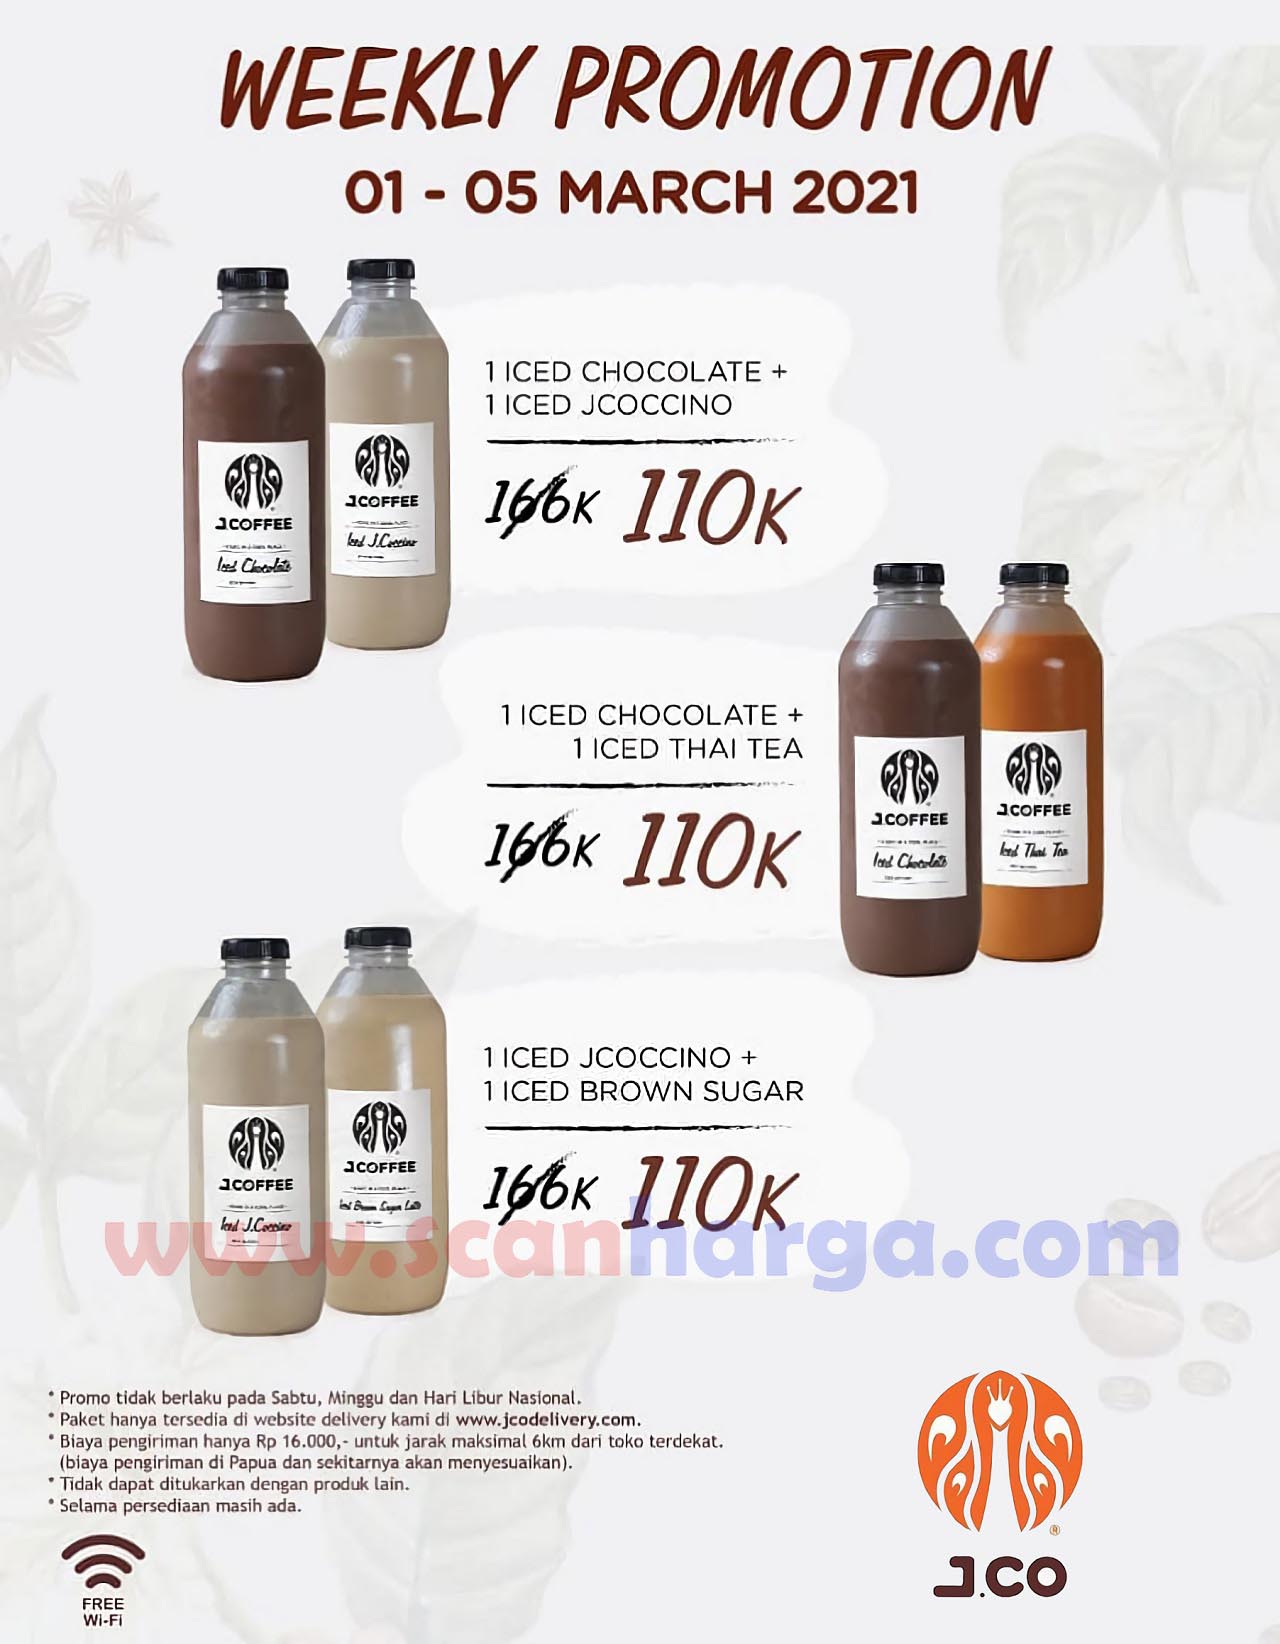 JCO Weekly Promotion! Promo 3 Paket Harga Cuma 100 Ribu